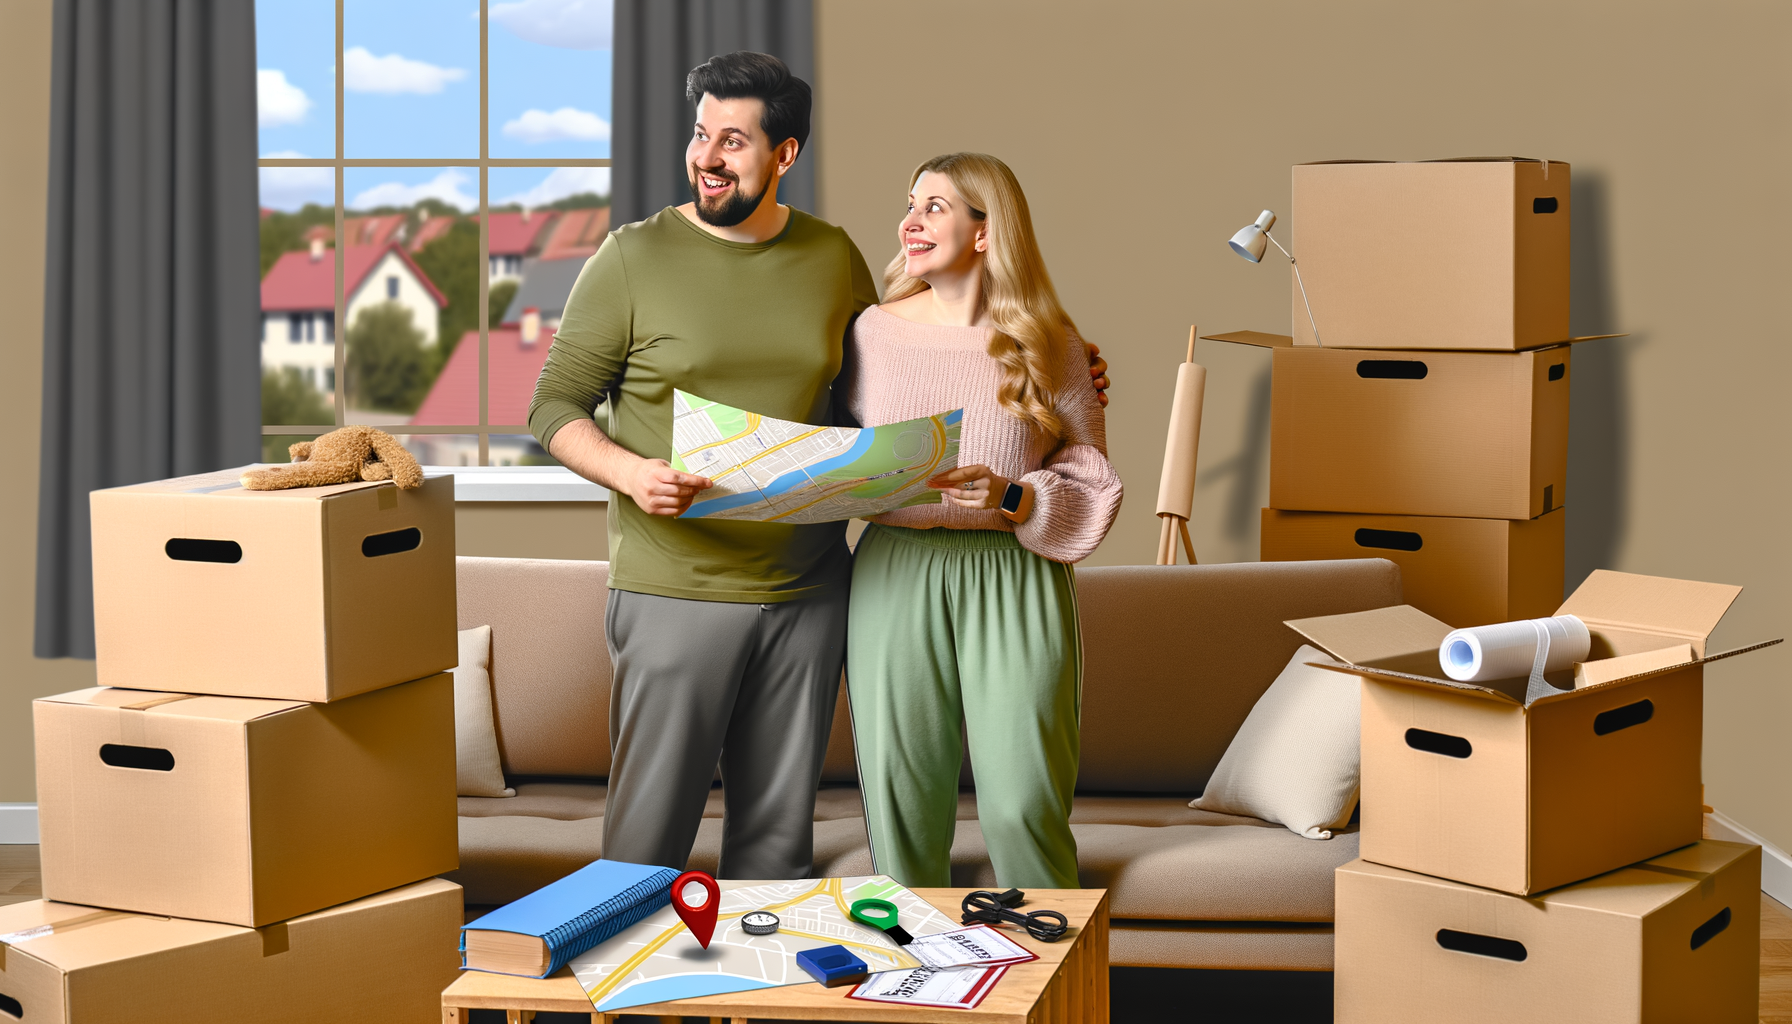 "alt=Un couple heureux déballant des cartons dans leur nouveau domicile après avoir déménagé pour suivre le conjoint"